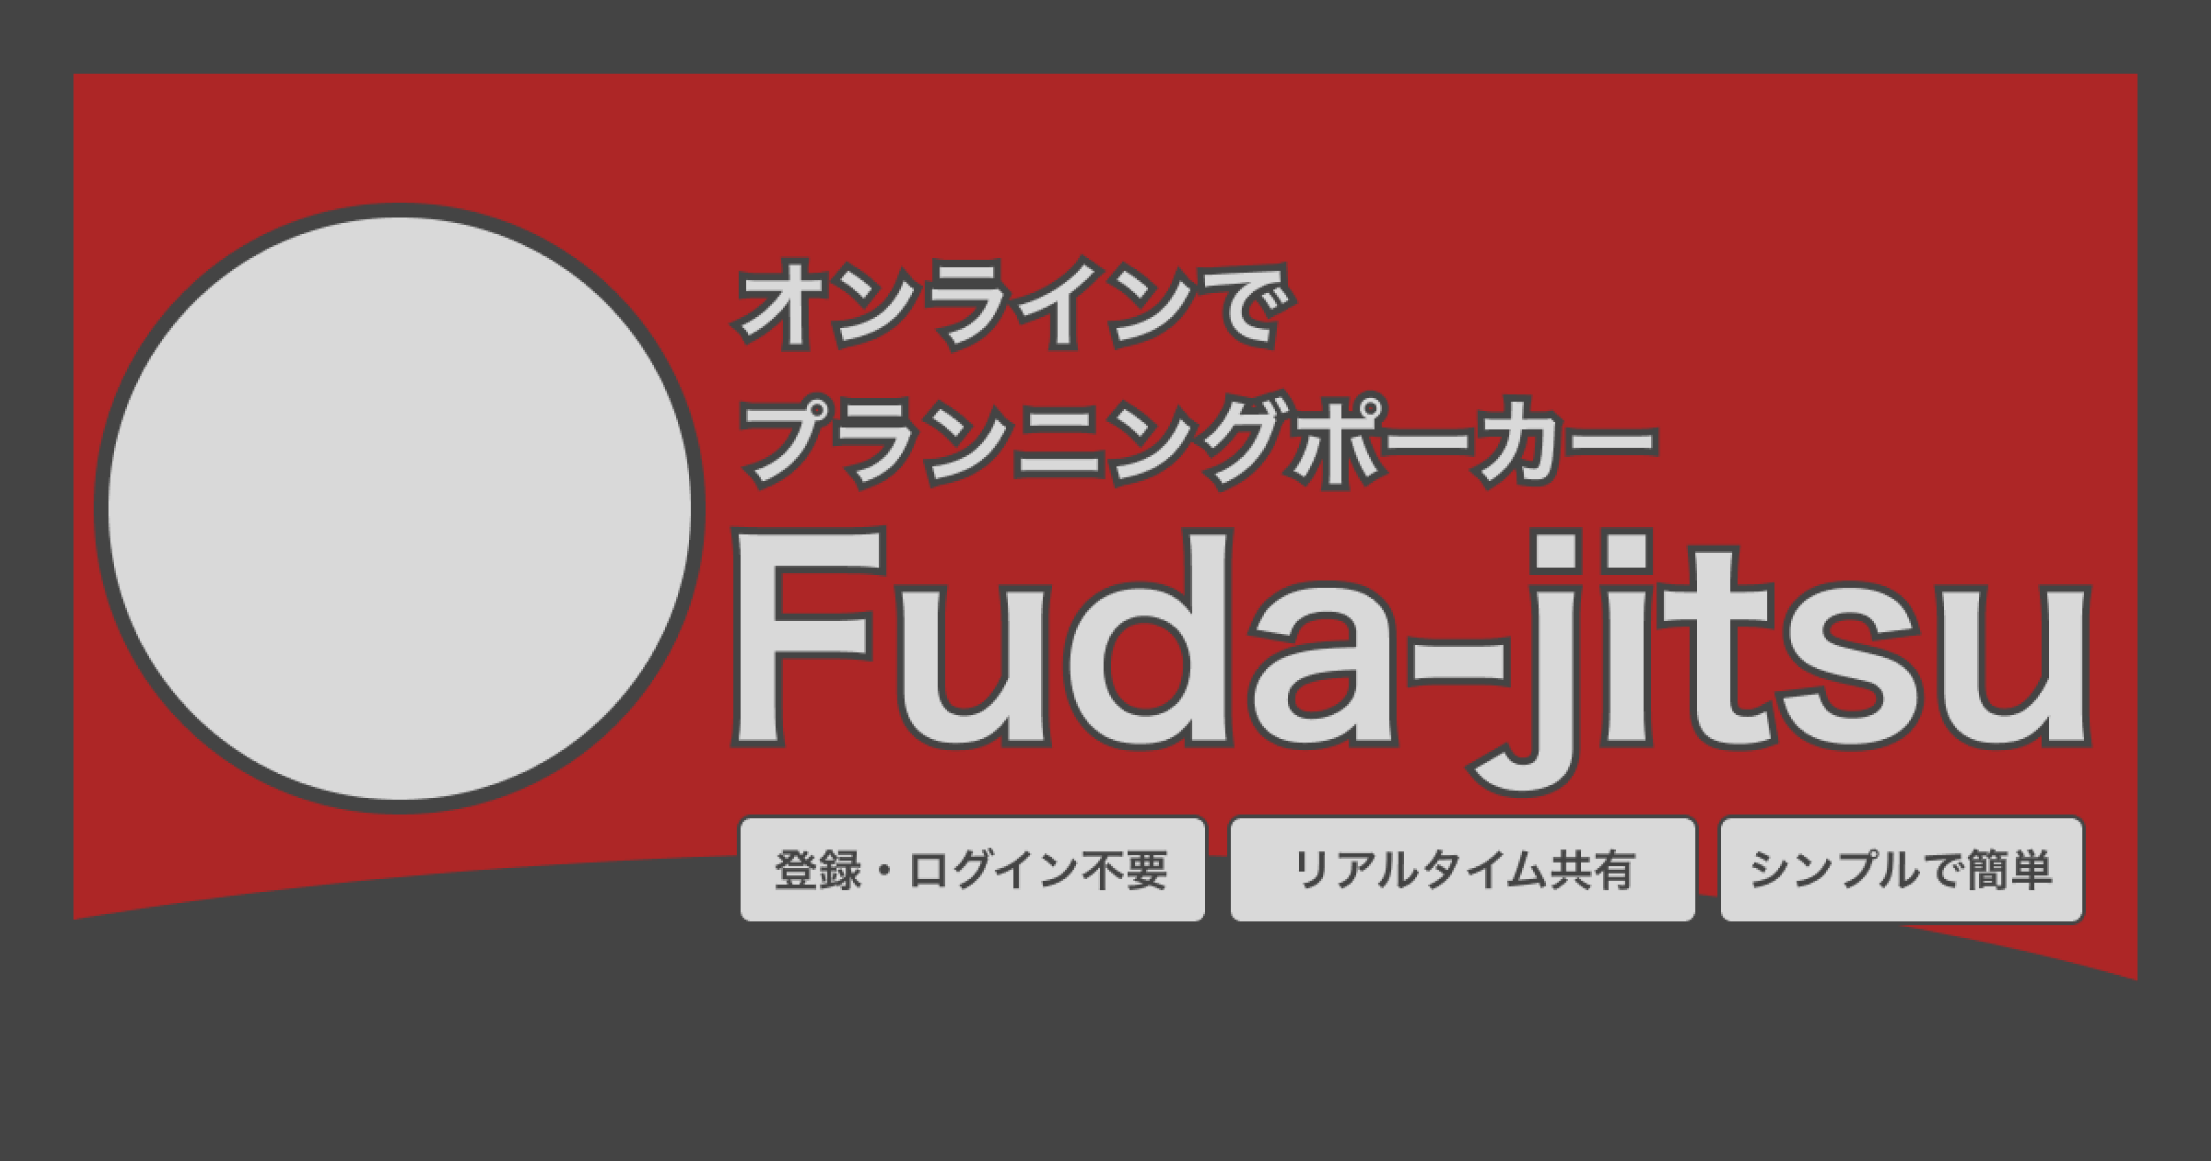 オンラインでプランニングポーカー Fuda-jitsuのバナー画像